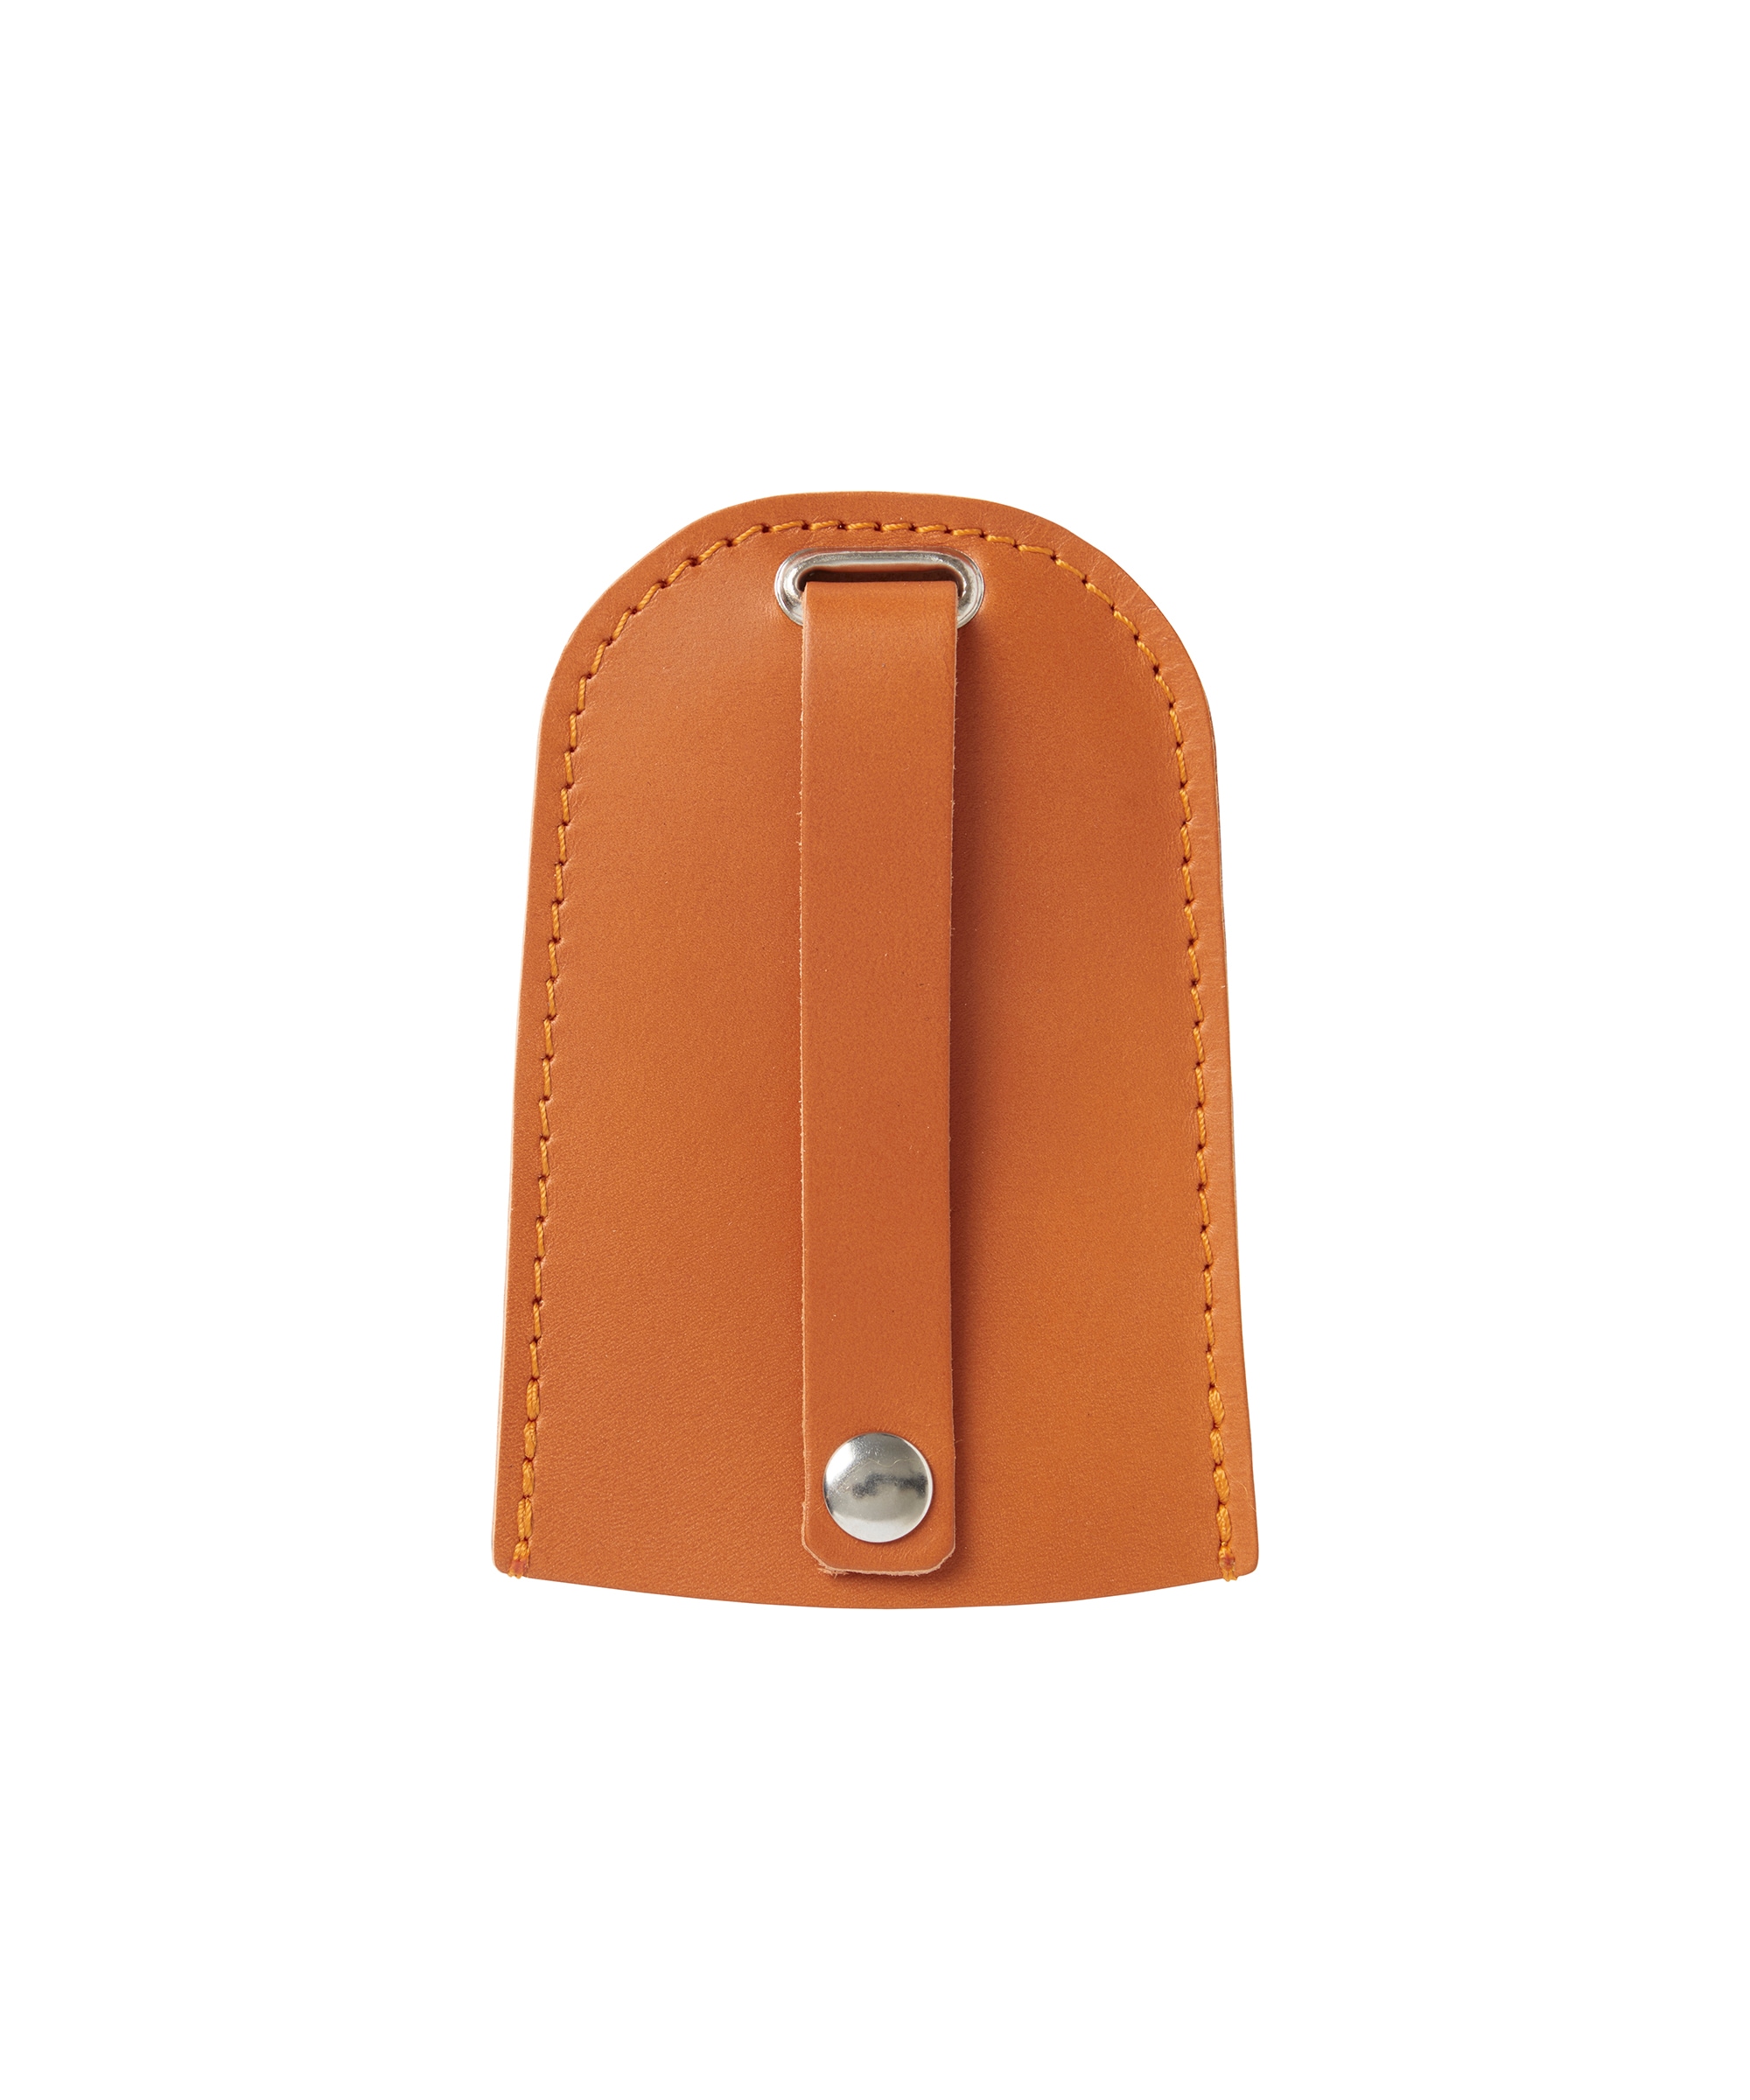 Leather key case Orange